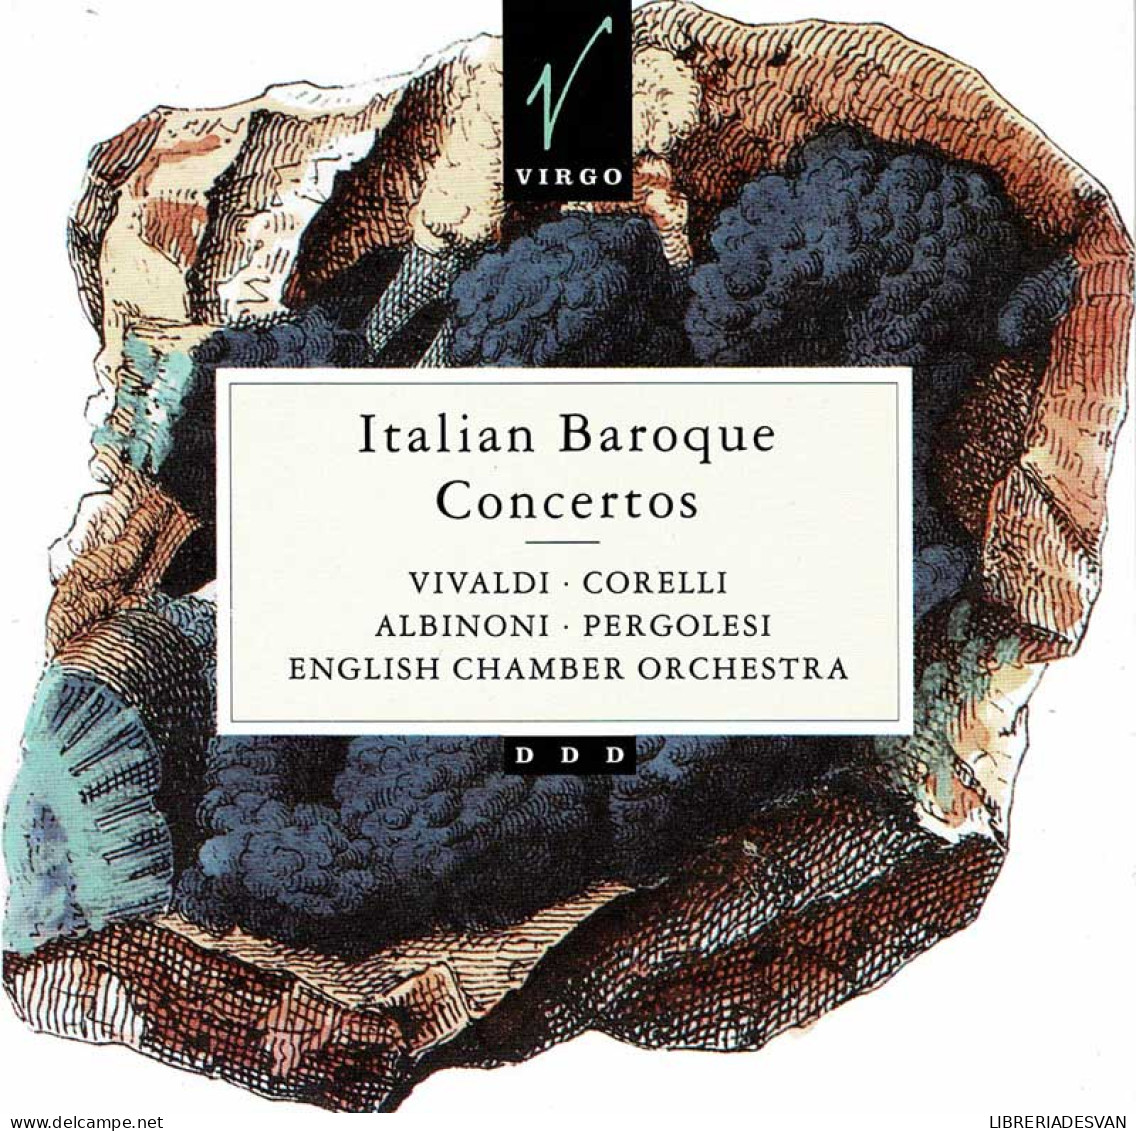 Vivaldi, Corelli, Albinoni, Pergolesi - Italian Baroque Concertos. CD - Classique